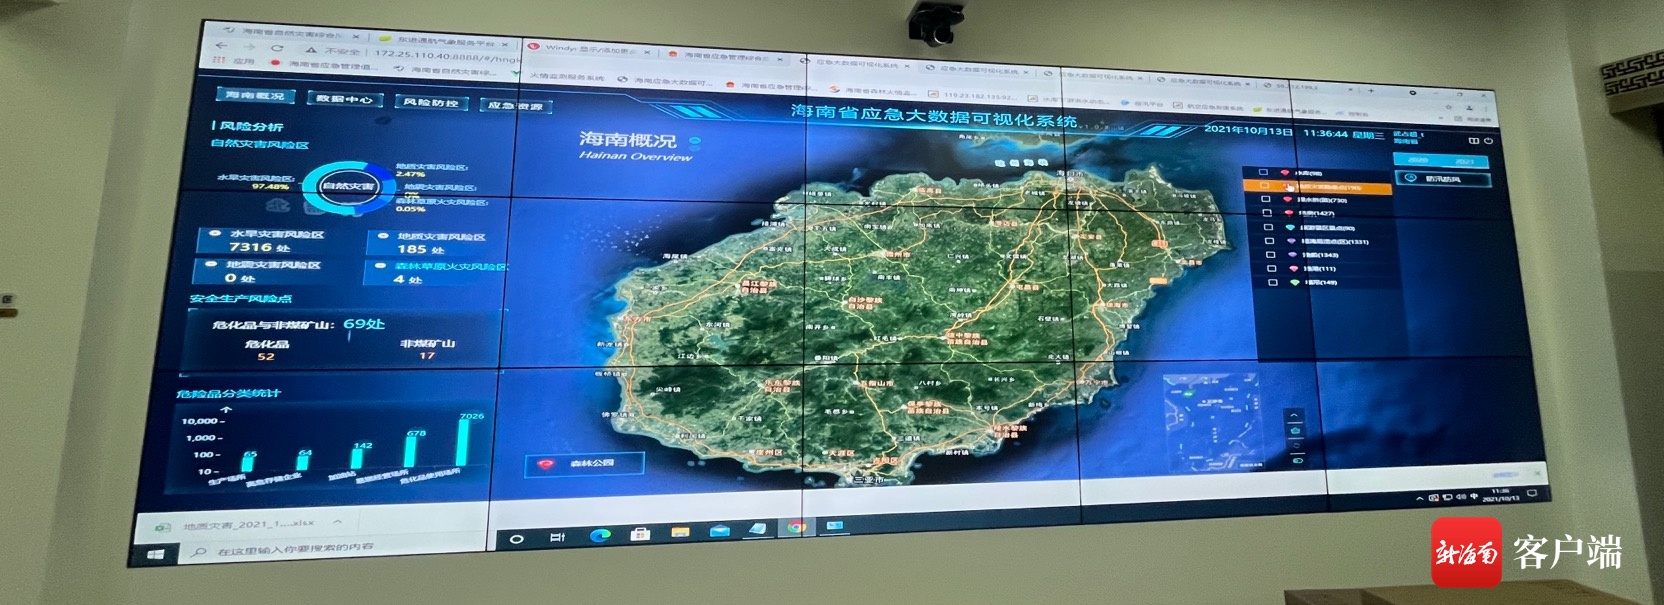 海南省应急大数据可视化系统接入1.3亿条信息 助力台风“圆规”风险研判